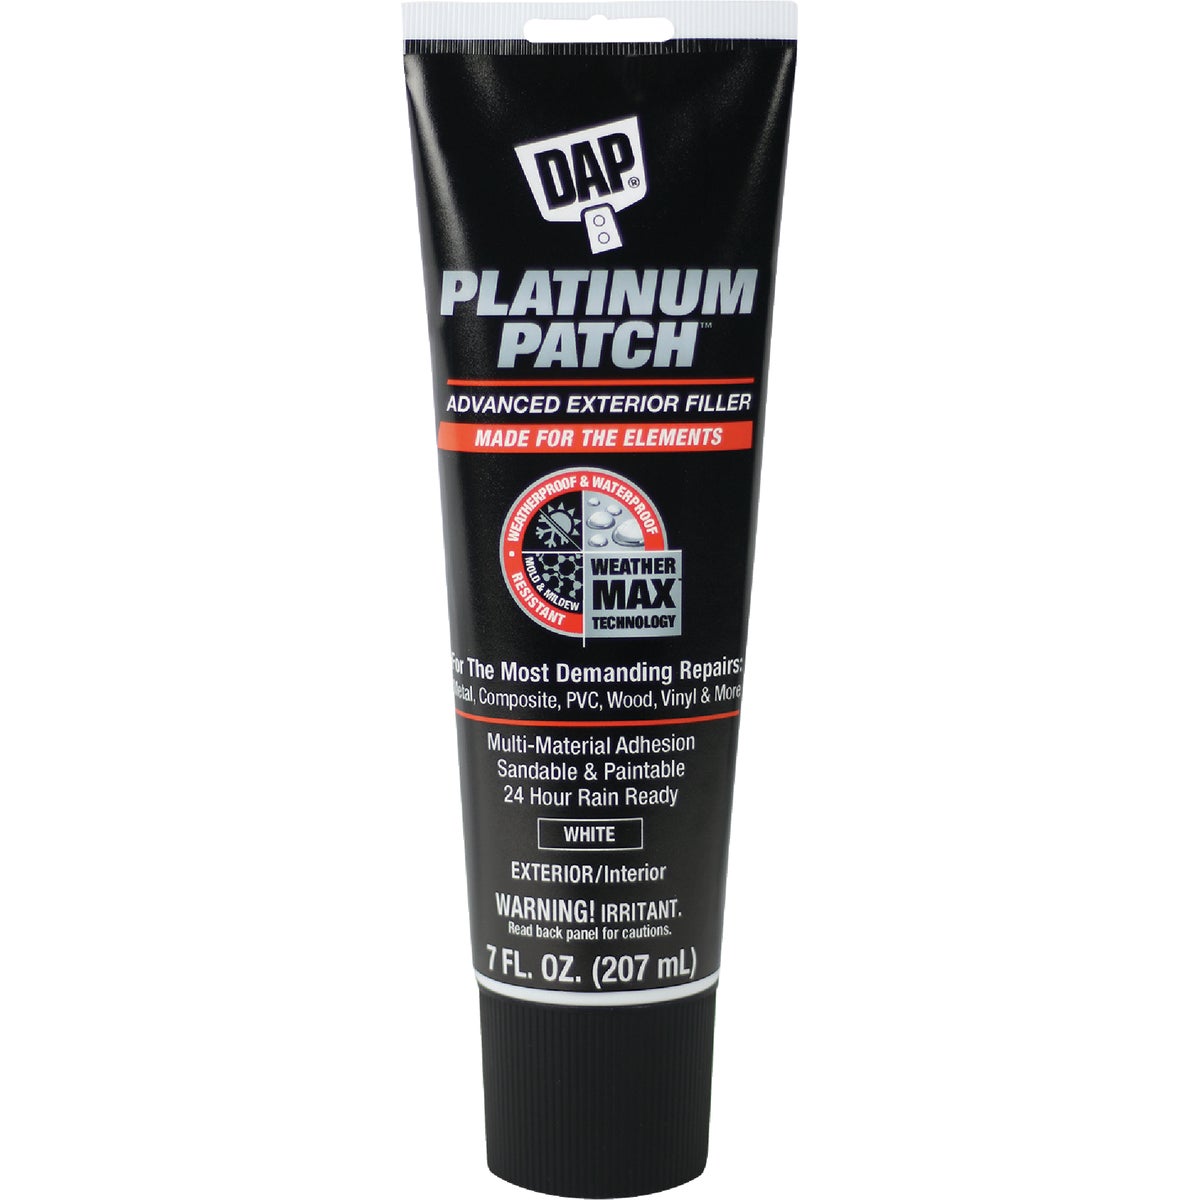 Dap Platinum Patch 7 Oz. Advanced Interior/Exterior Spackling Filler